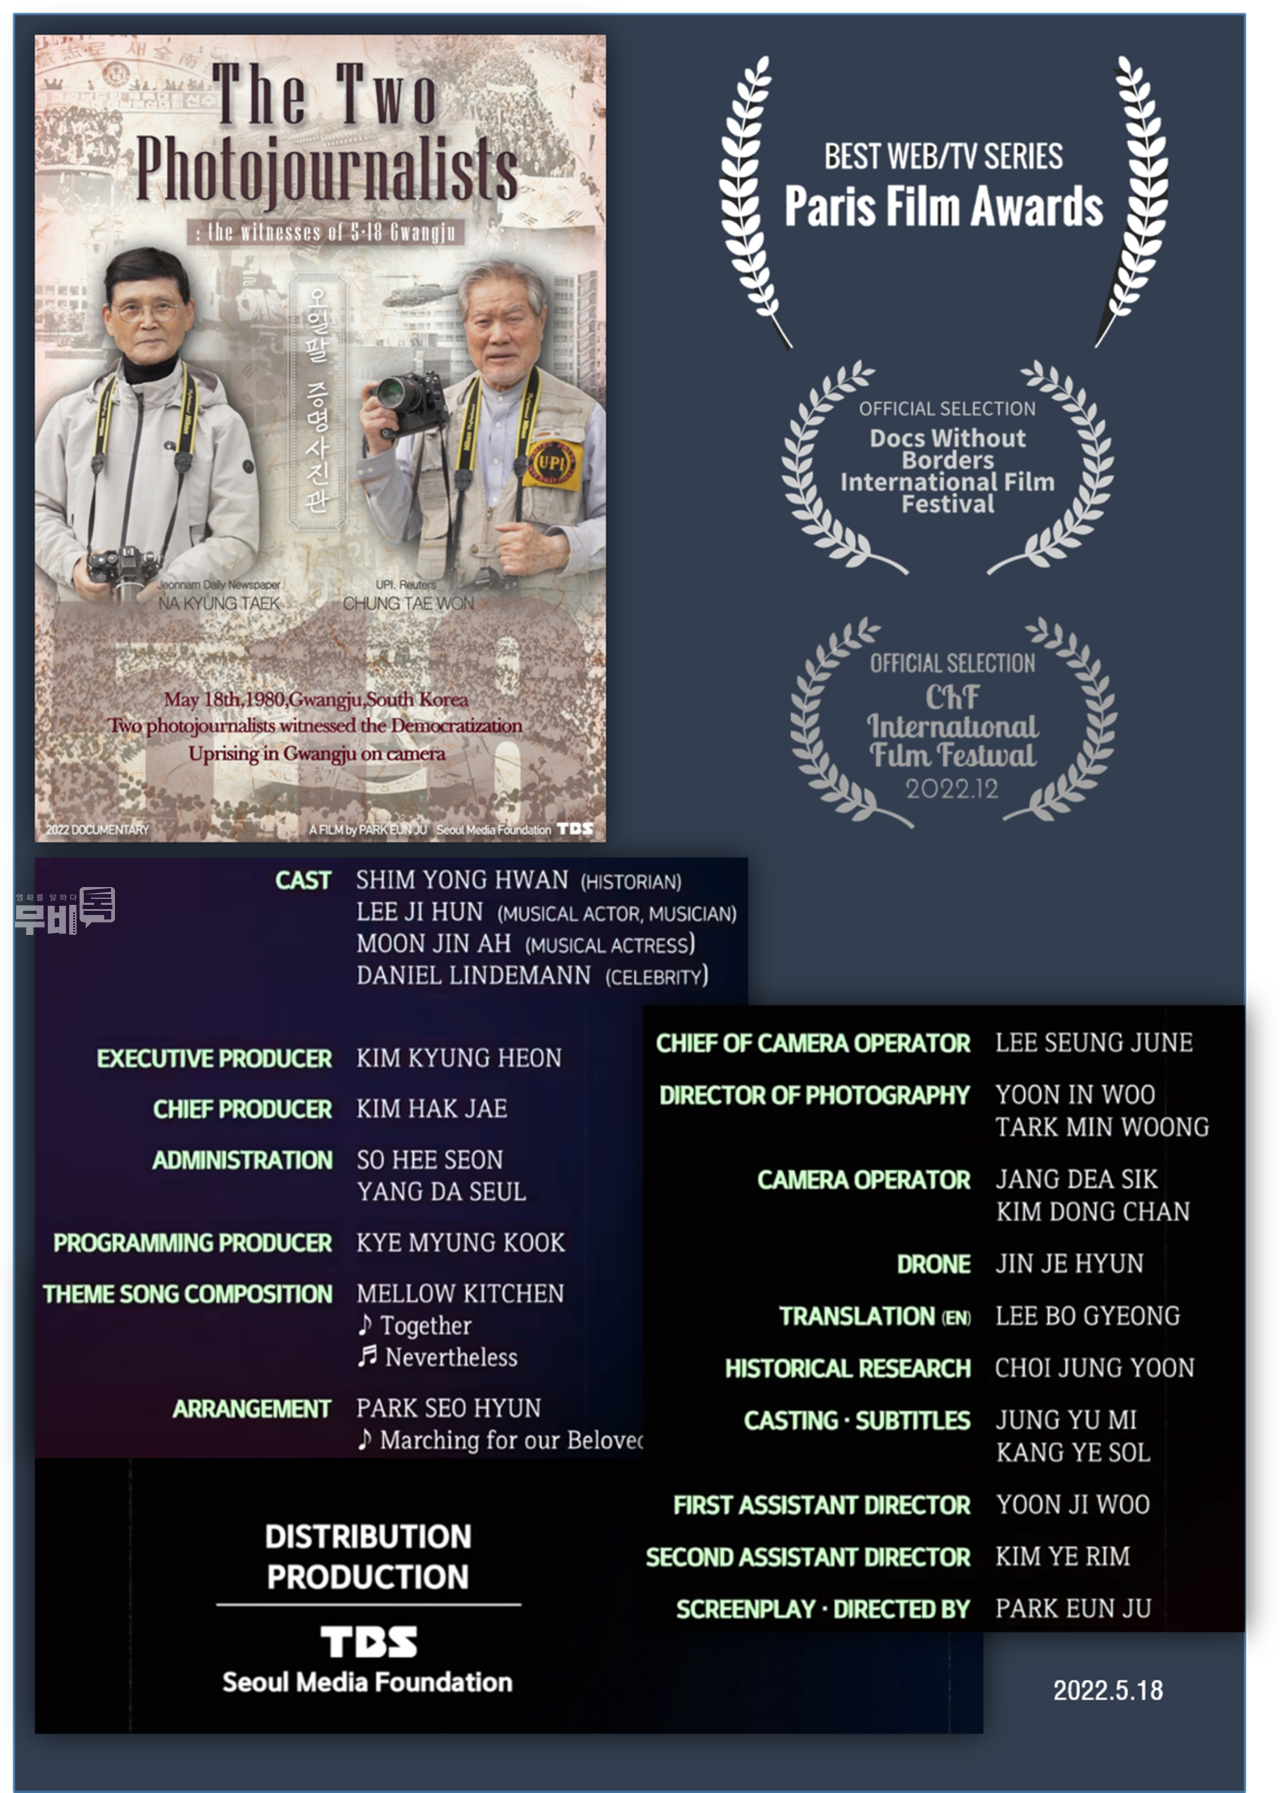 이미지= 프랑스 파리 필름 어워즈(Paris Film Awards)에서 ‘최우수 웹/TV 시리즈’ 수상